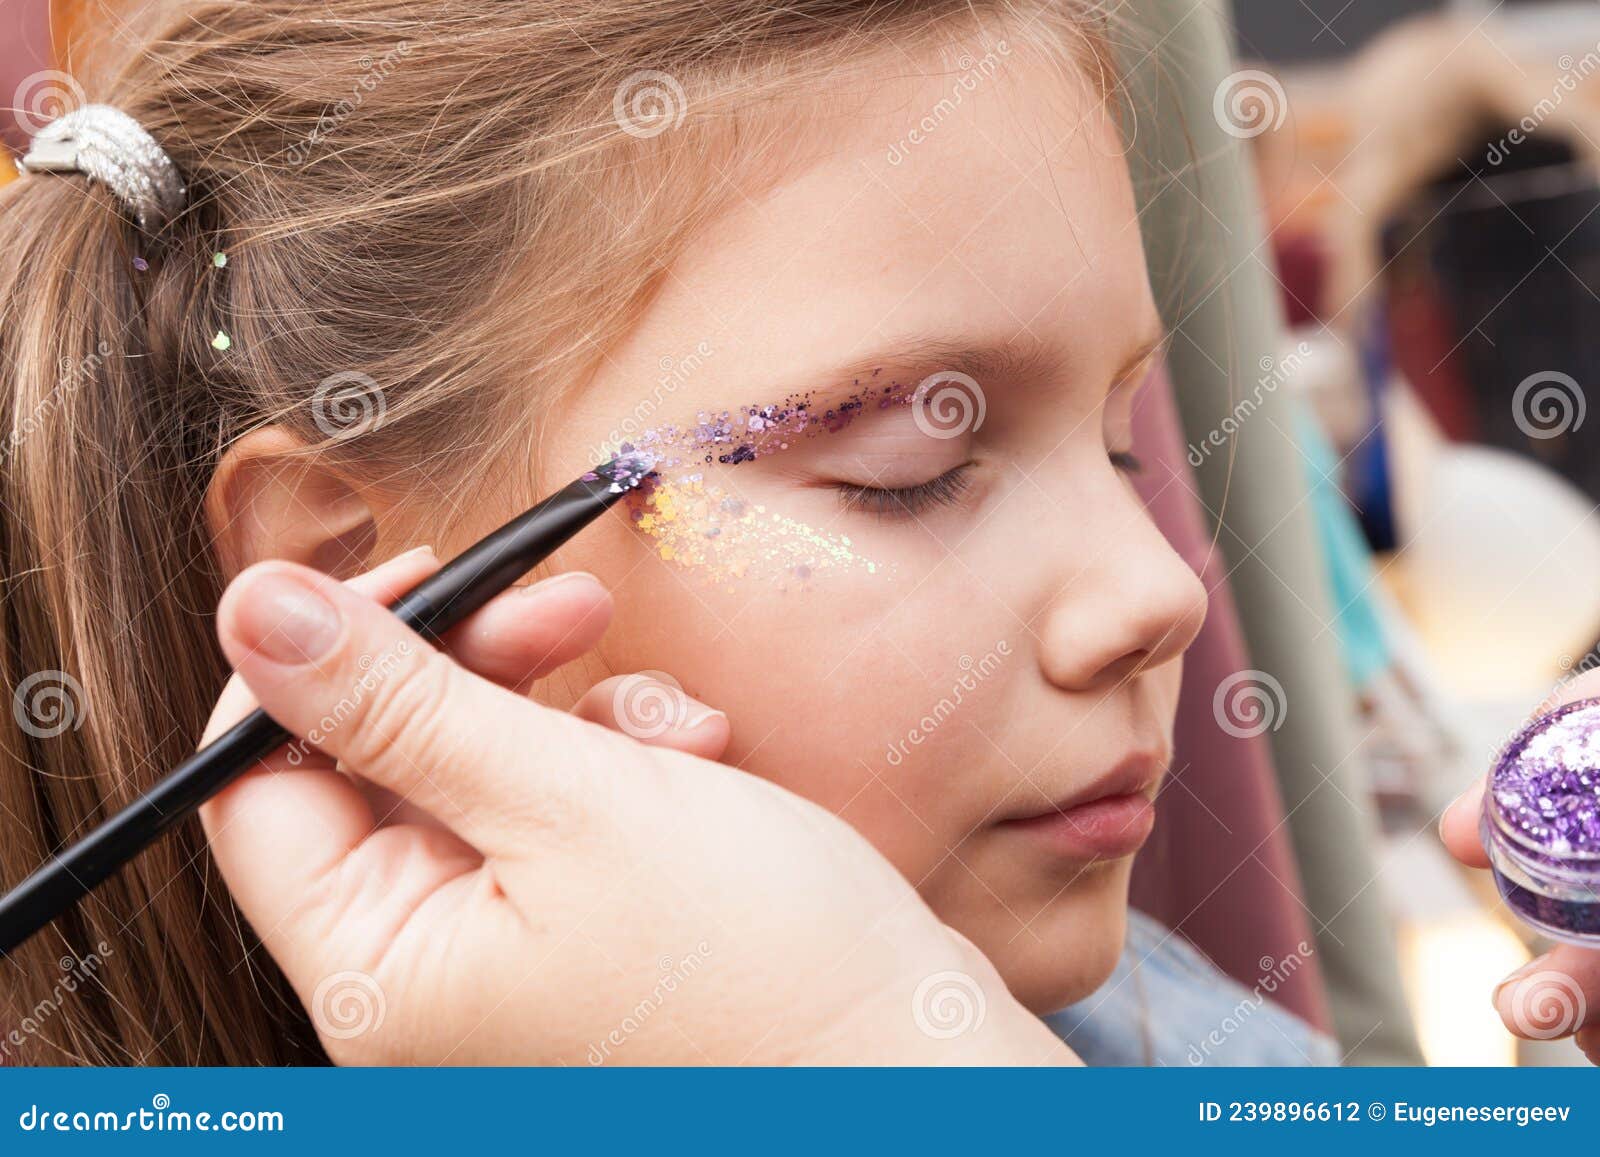 Maquillaje De Cara Festivo Para Una Niña Pequeña Foto de archivo - de ojos, profesional: 239896612